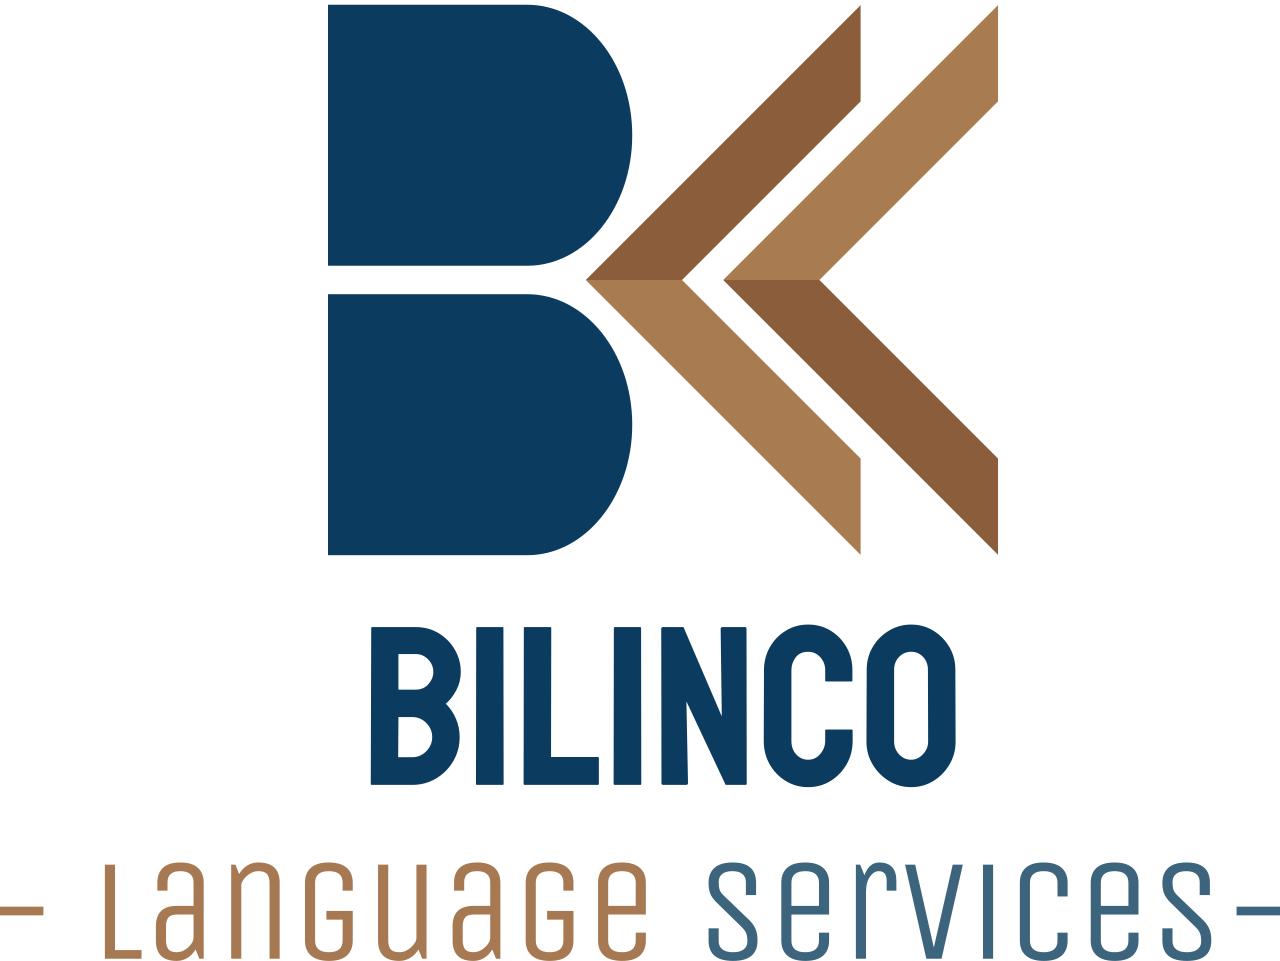 BILINCO's web page